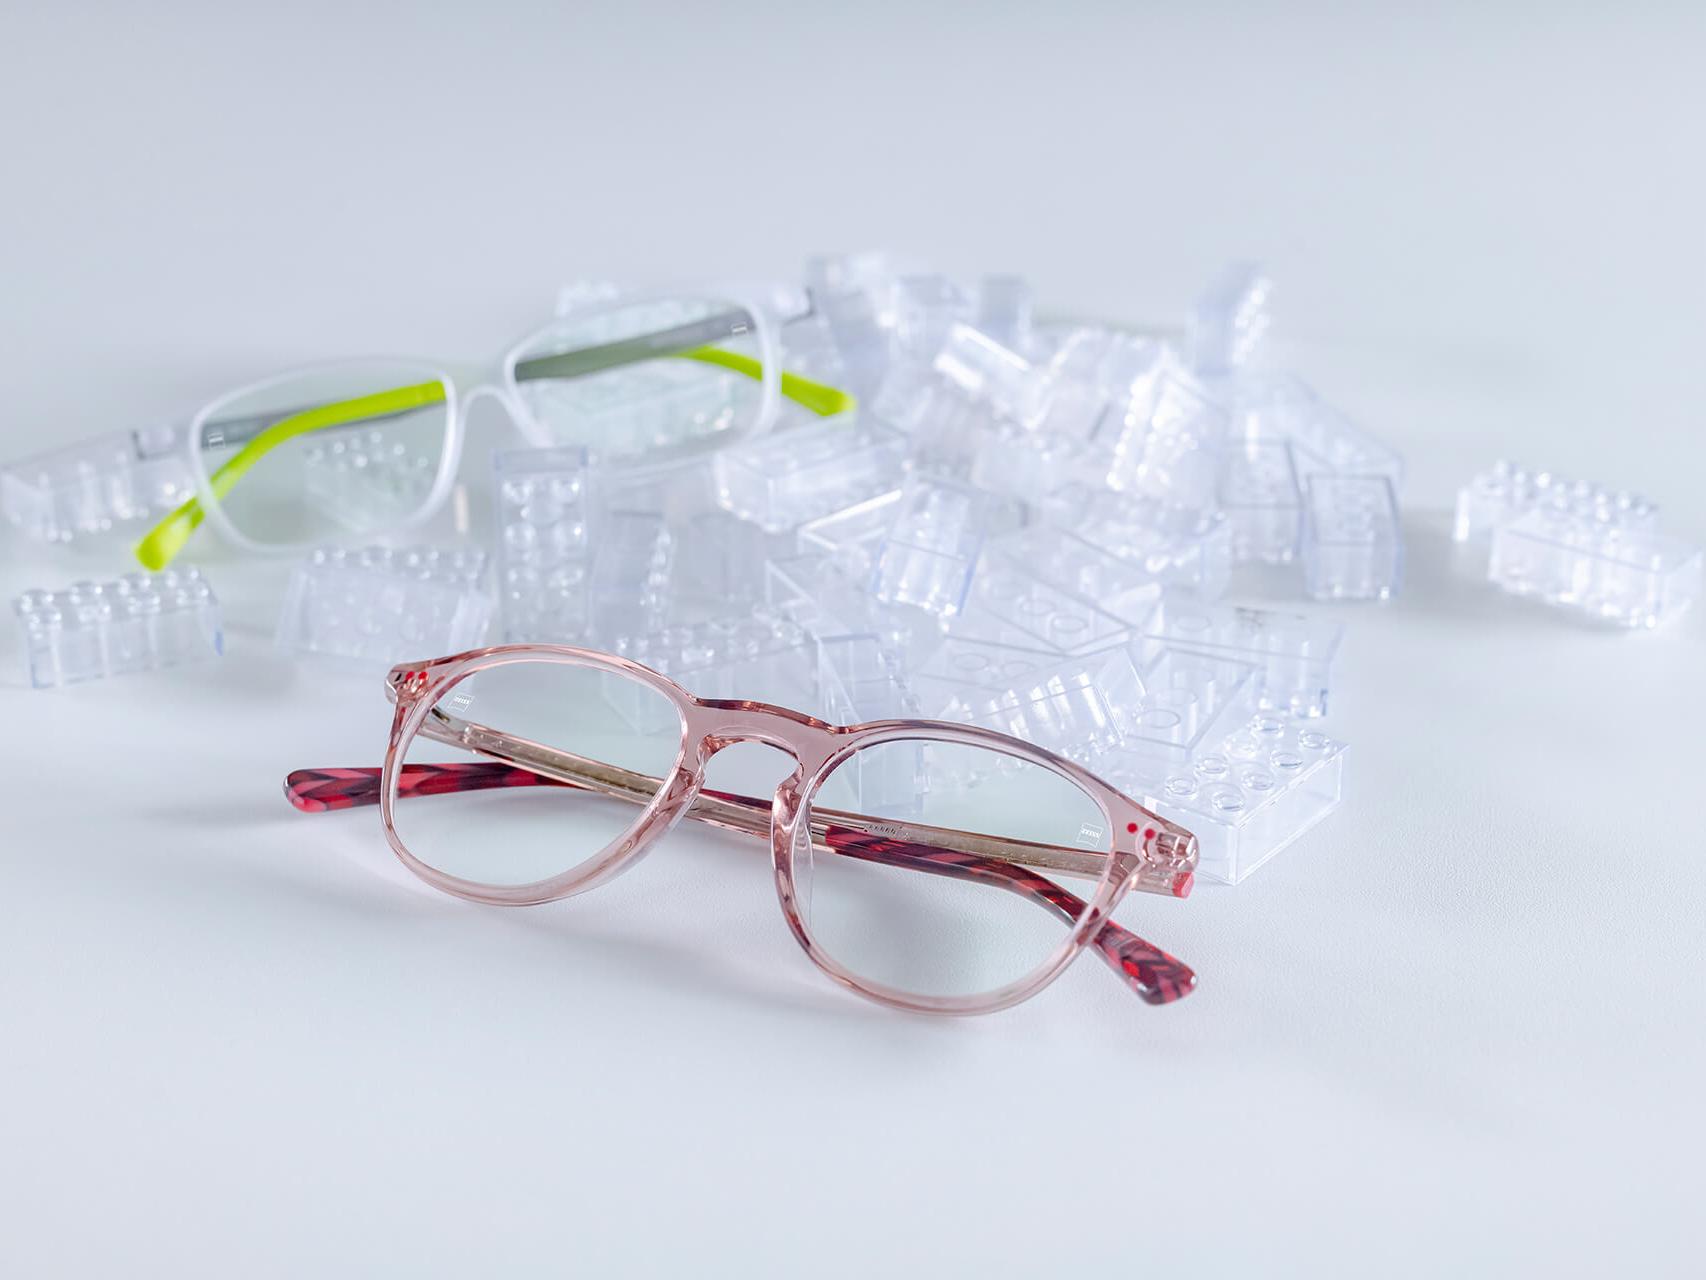 Dos pares de gafas infantiles con lentes ZEISS y protectores DuraVision® para niños. Las gafas se colocan entre ladrillos infantiles transparentes.